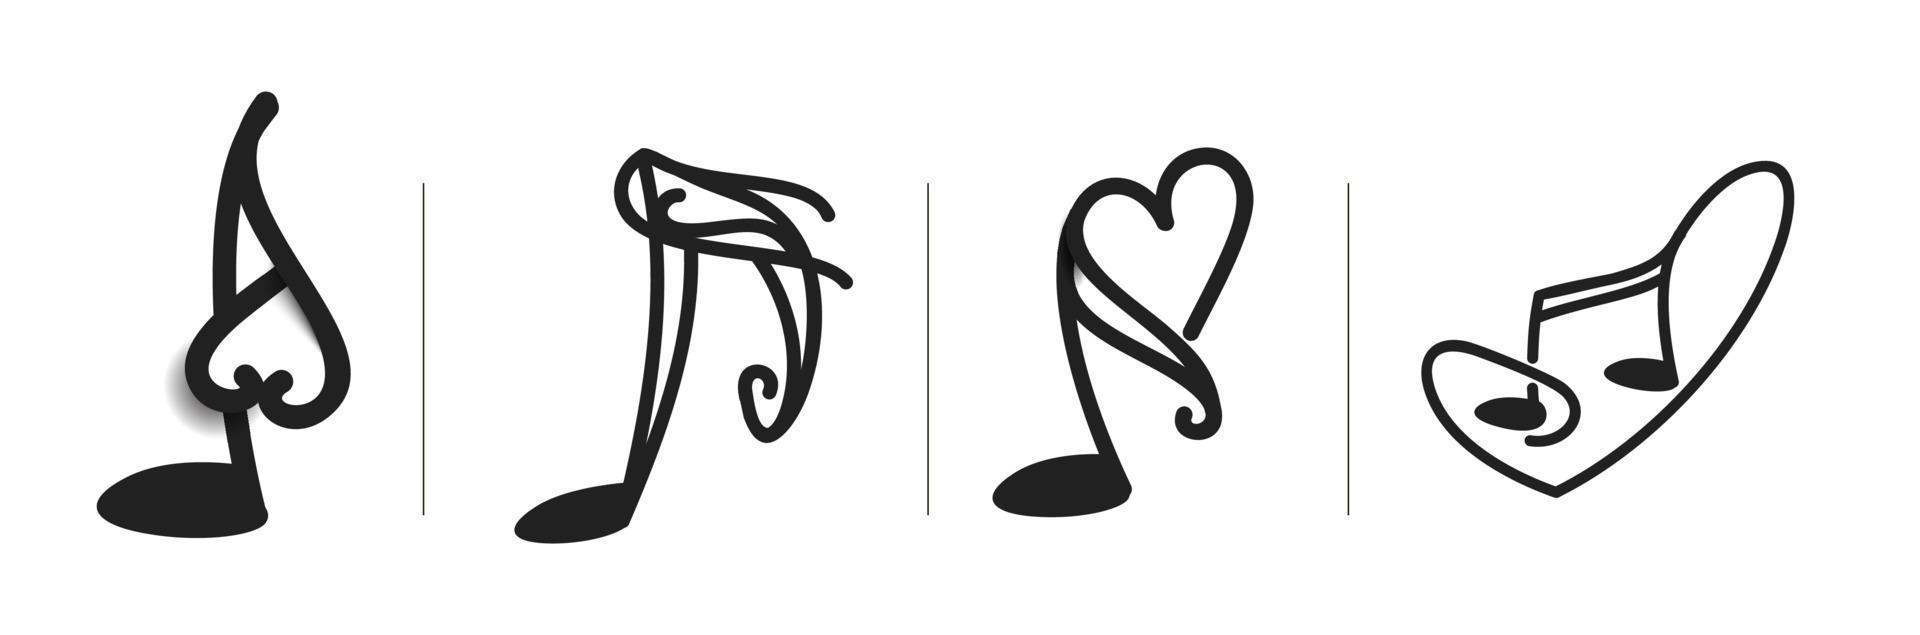 illustrazione di vettore di progettazione del modello di logo del cuore di beatwith di musica